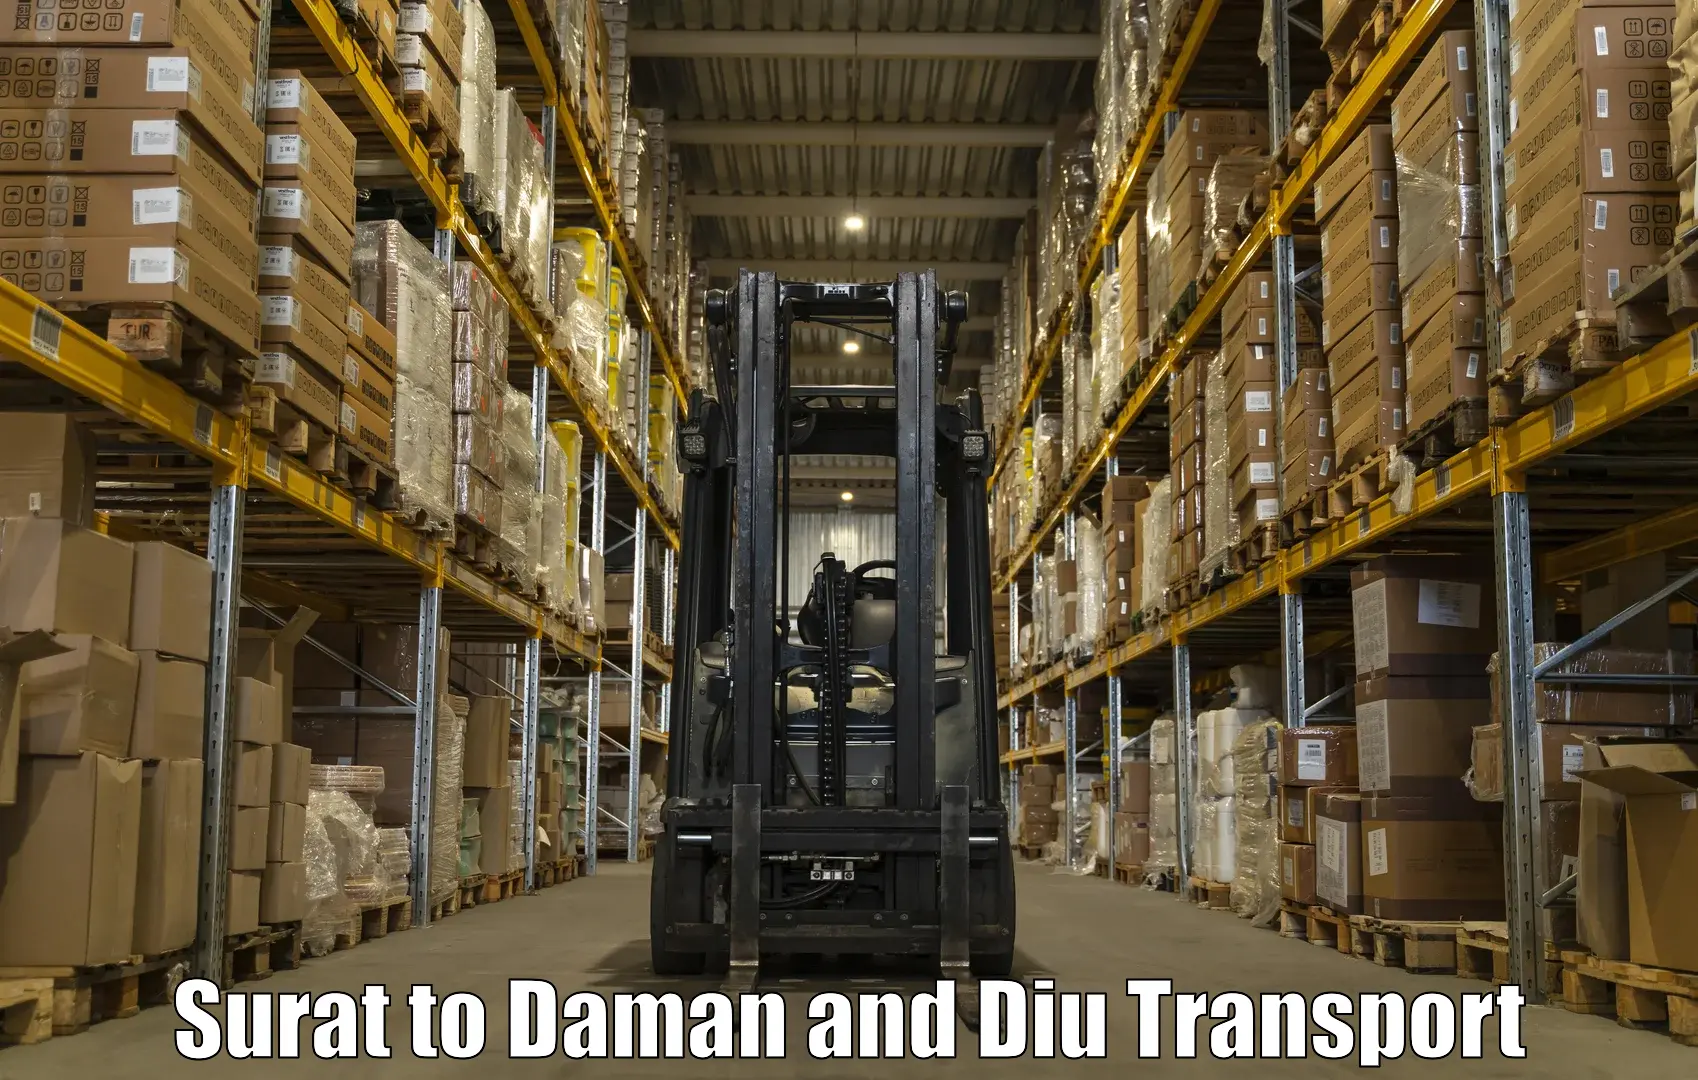 Furniture transport service Surat to Daman and Diu